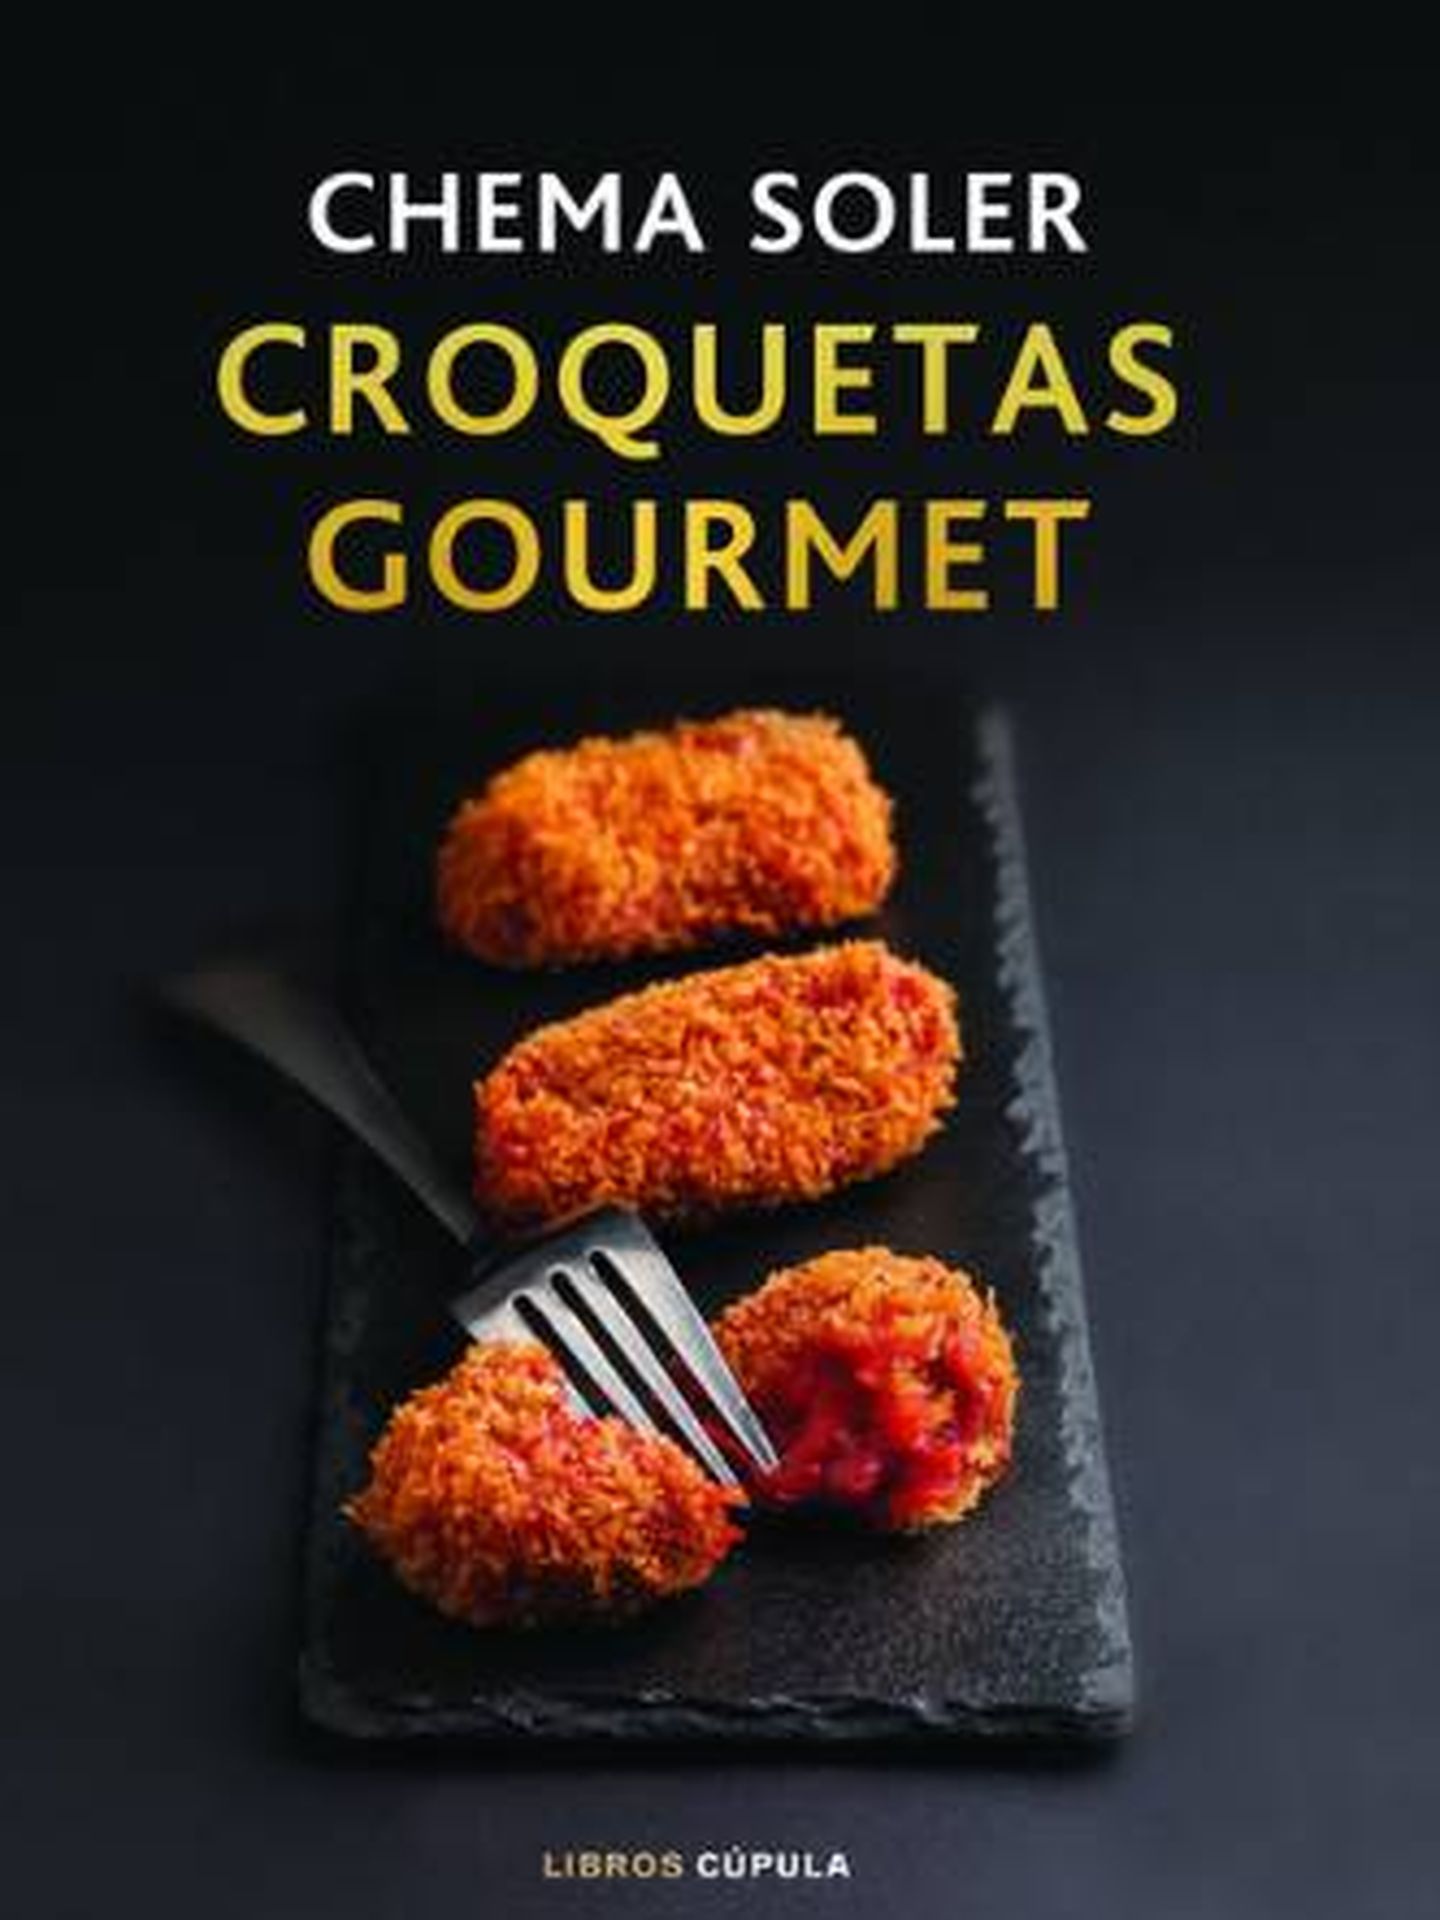 Portada del libro 'Croquetas Gourmet', de Chema Soler.